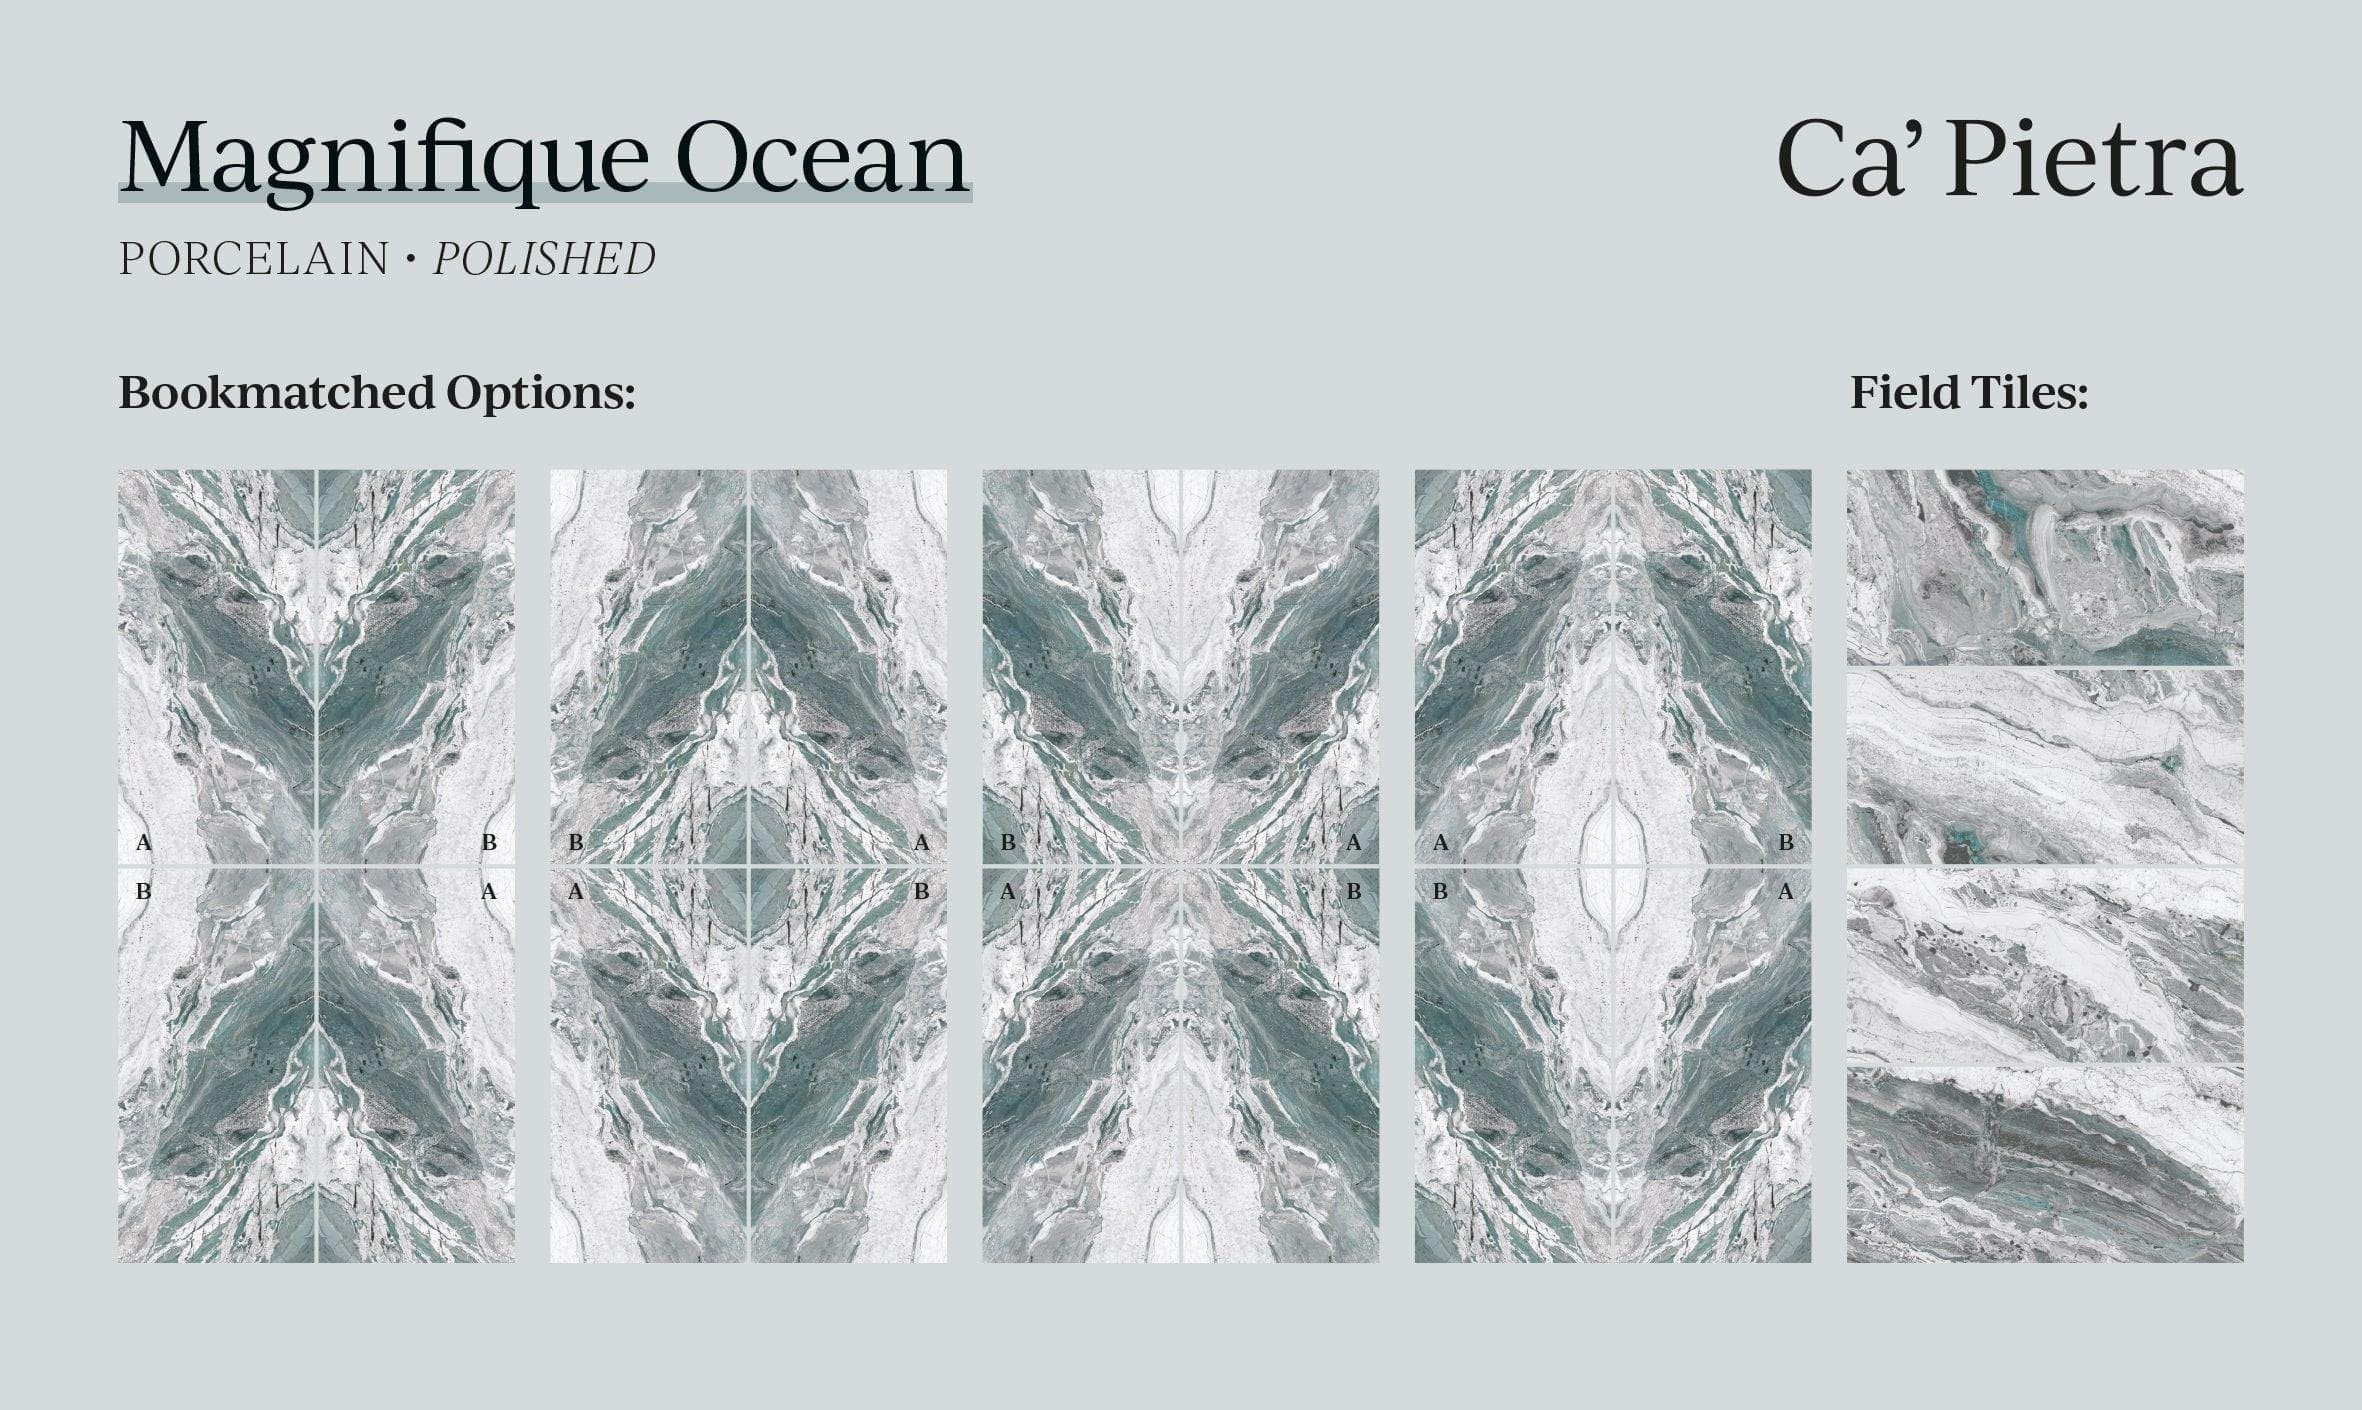 Ca' Pietra Wall & Floor Tiles Magnifique Porcelain Polished Ocean